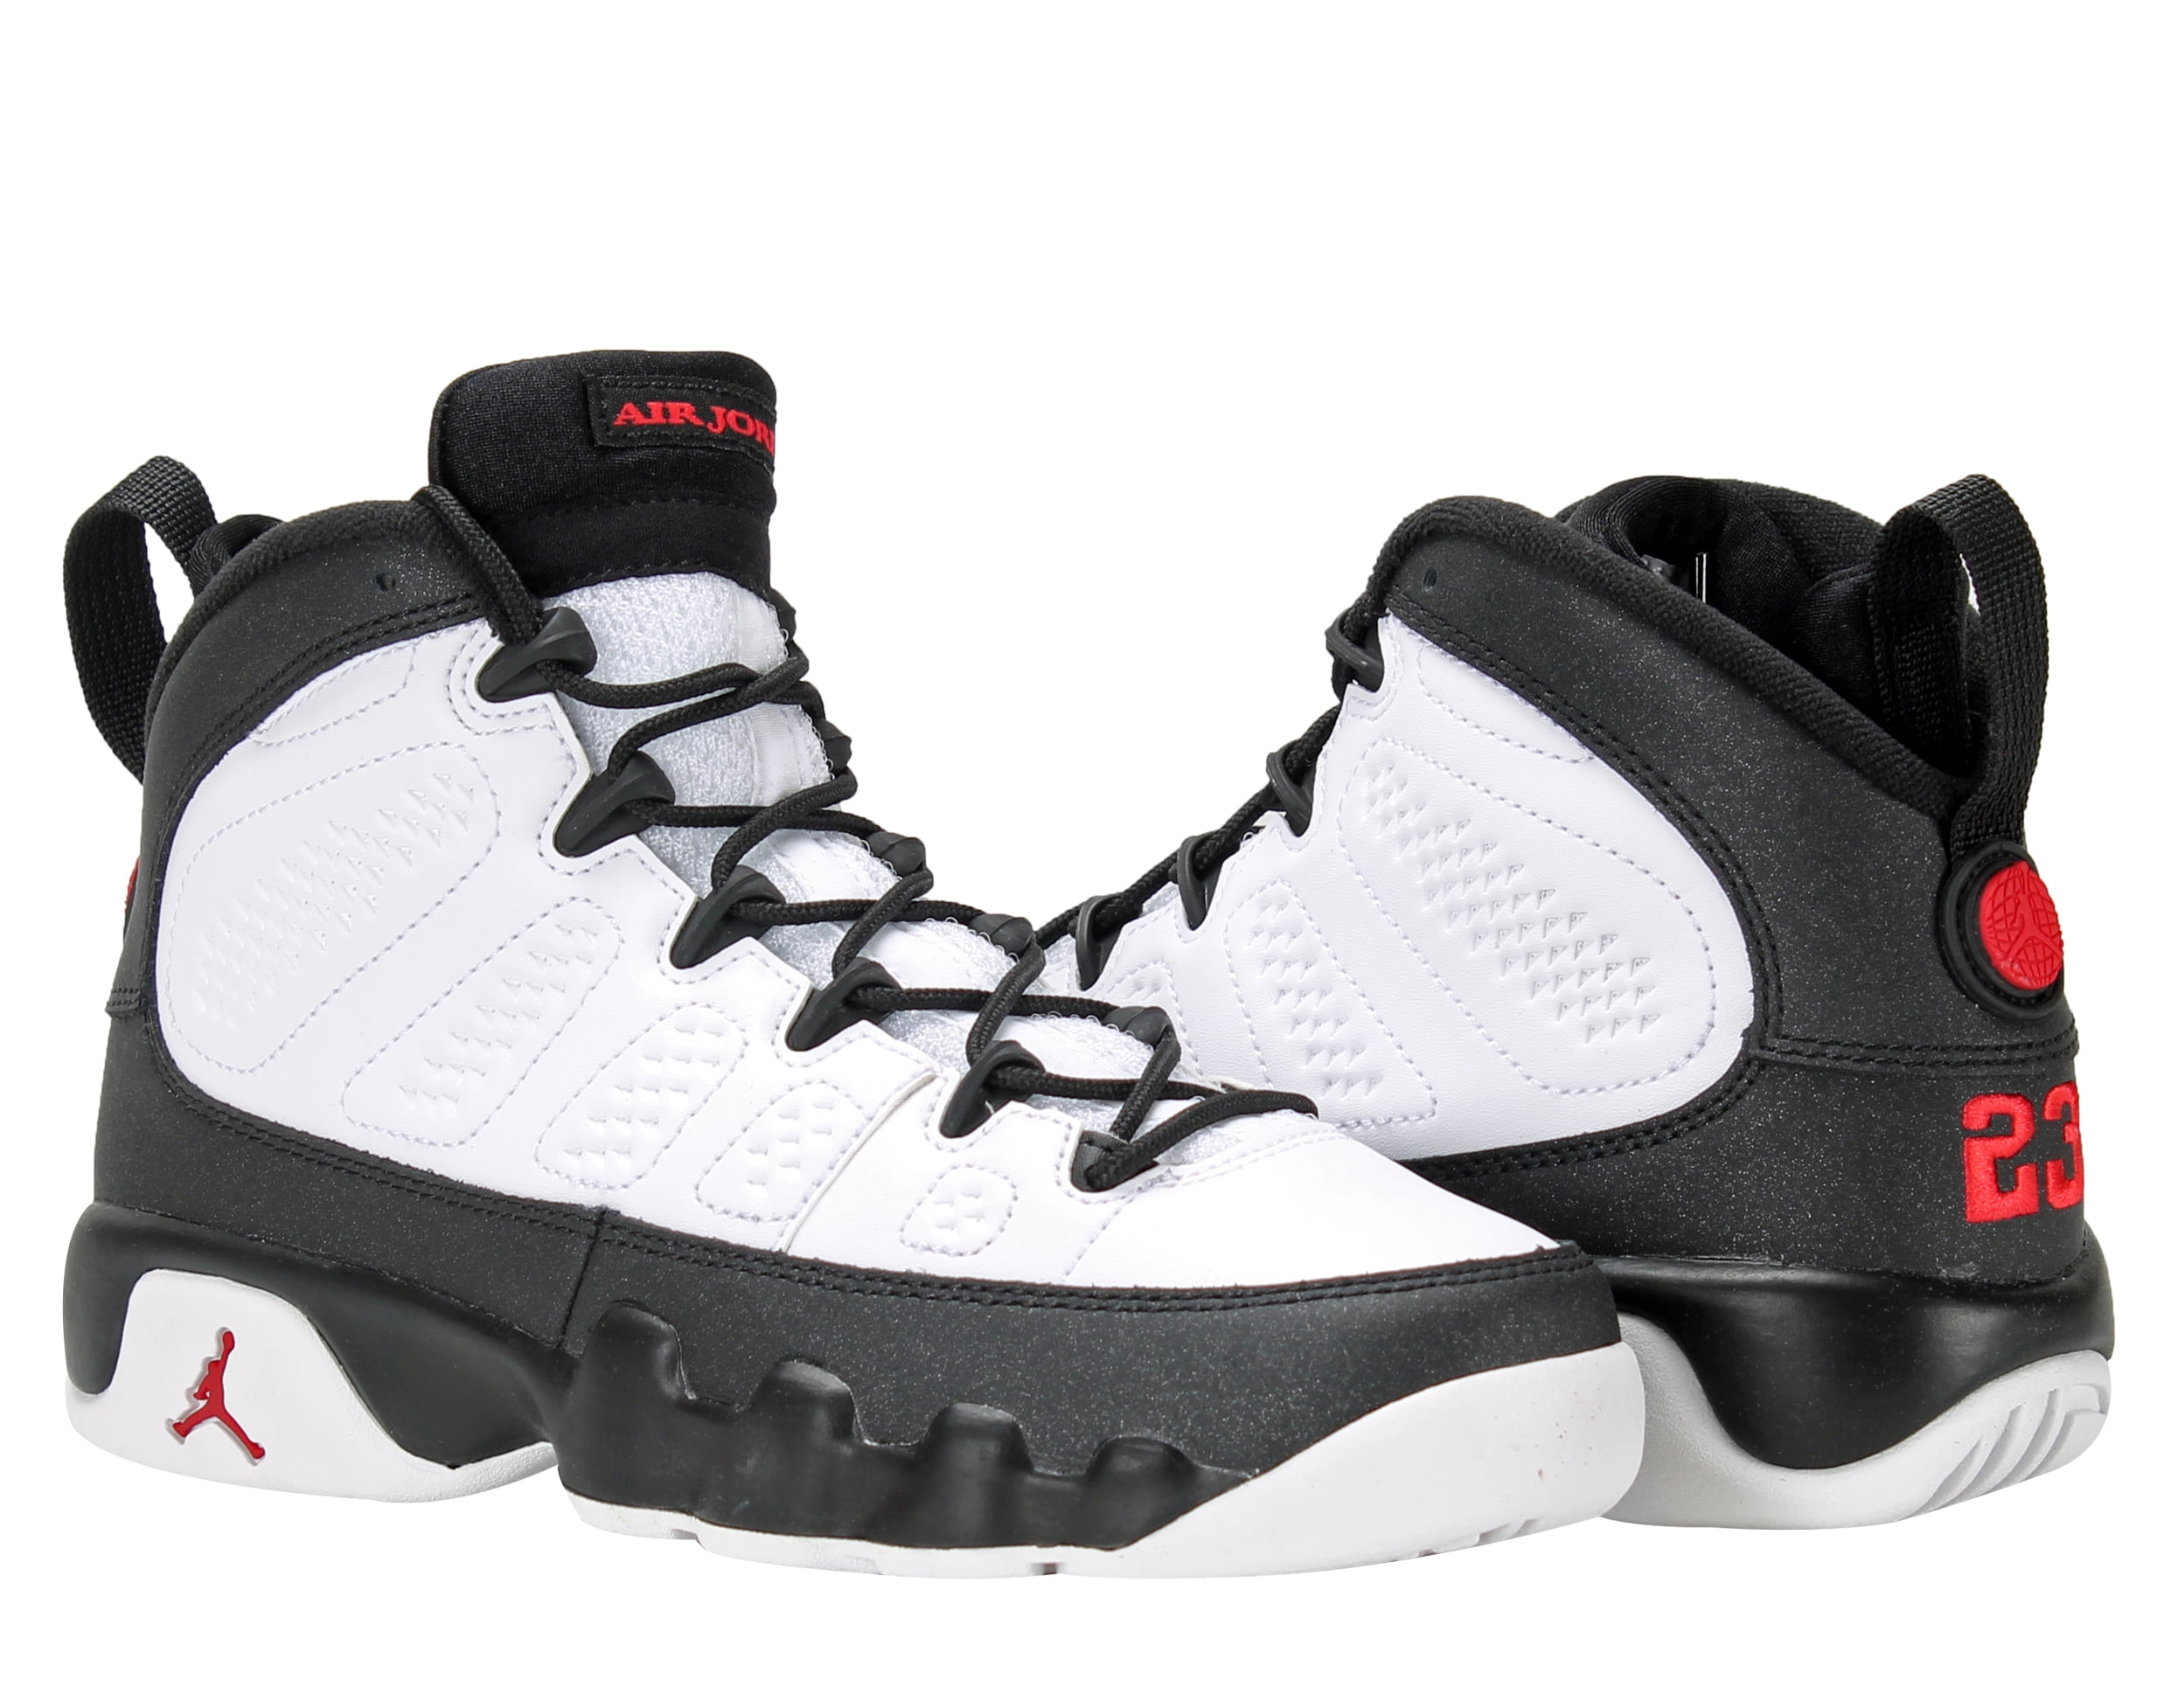 Suradam cazar Coca Nike Air Jordan 9 Retro BG Big Kids Basketball Shoes Size 4 - Walmart.com